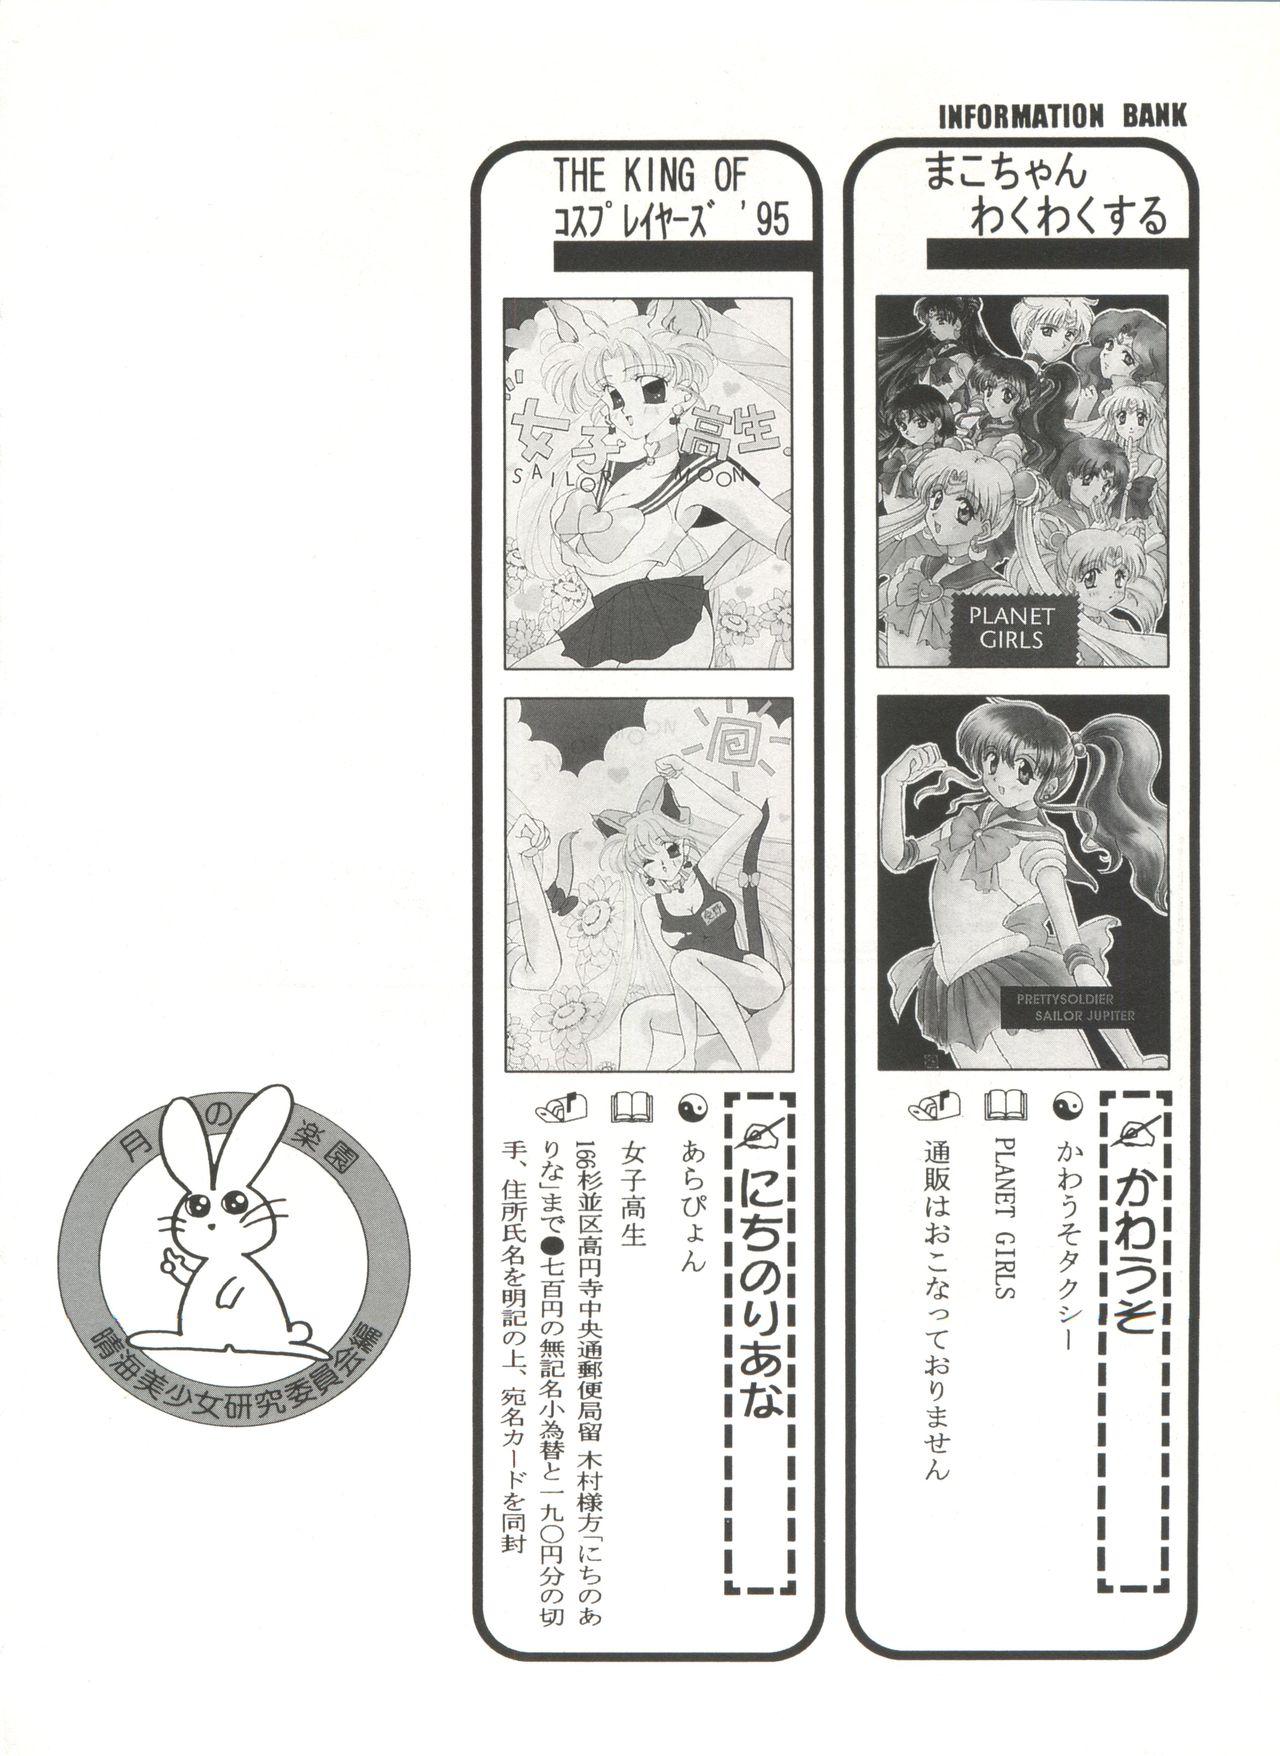 Bishoujo Doujinshi Anthology 16 - Moon Paradise 10 Tsuki no Rakuen 142